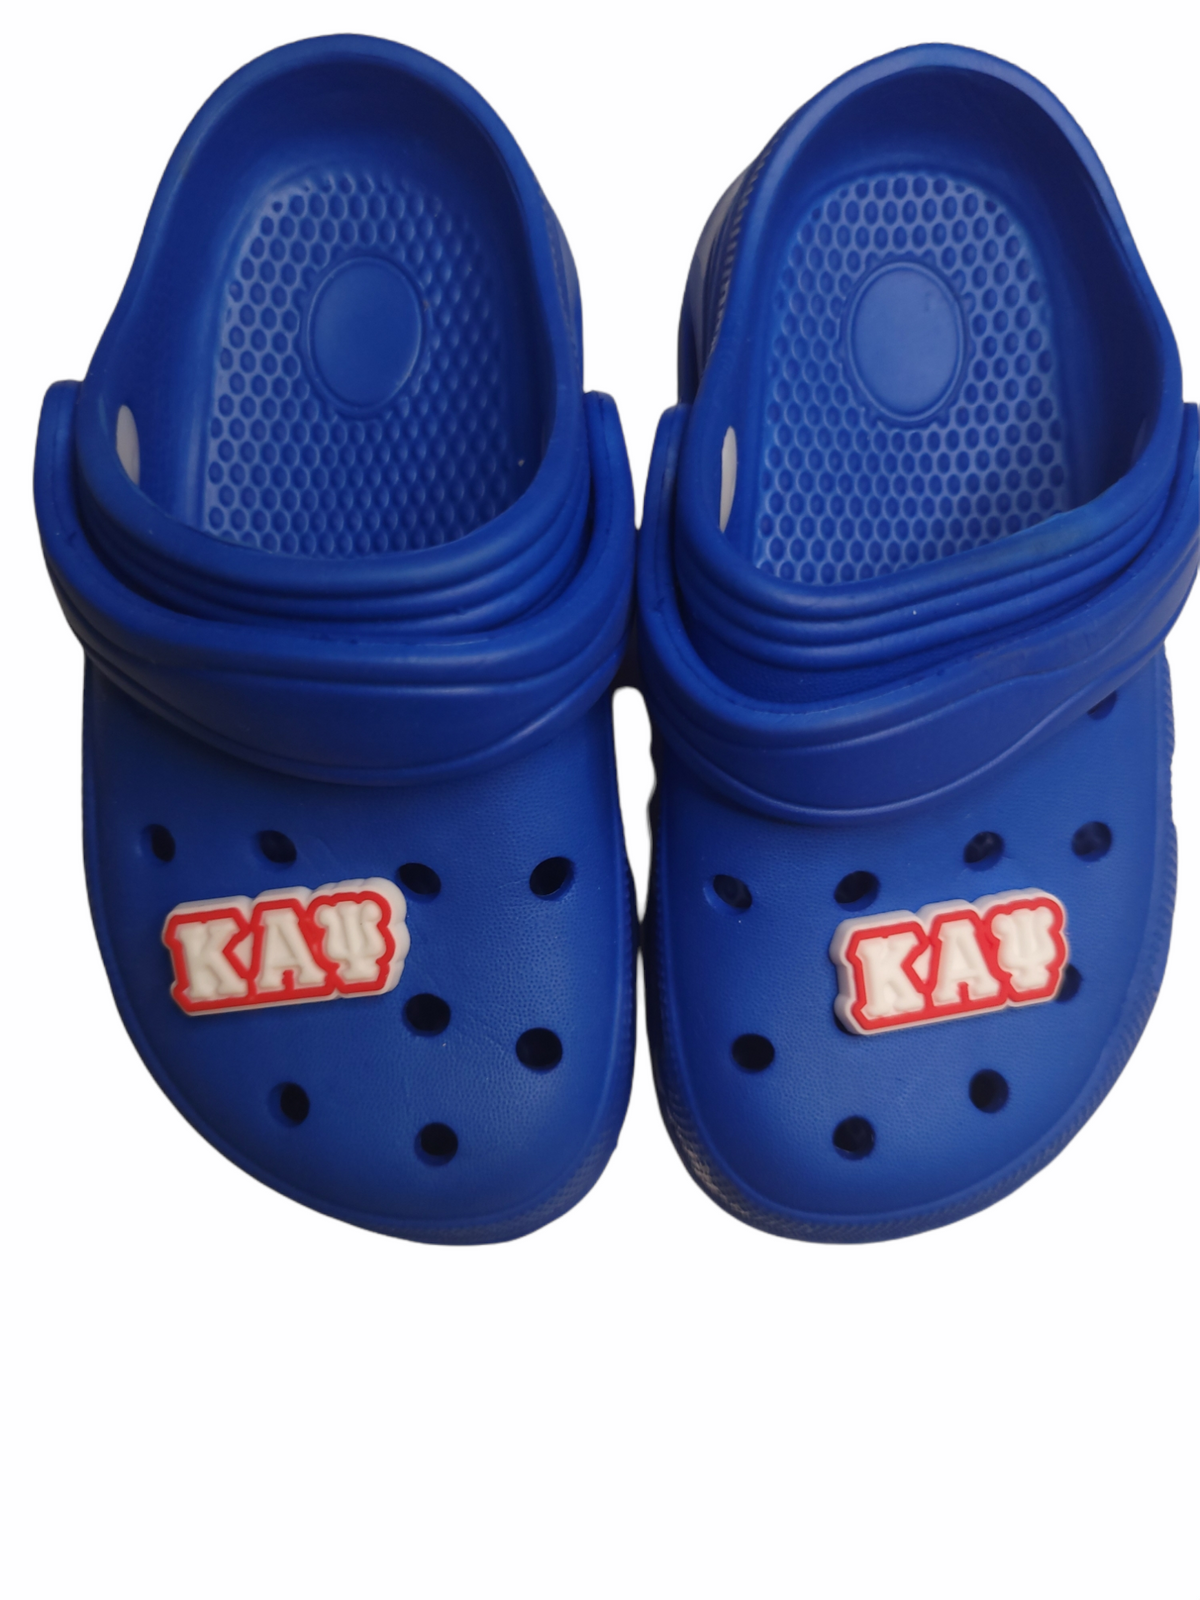 Kappa Alpha Psi Shoe Charm